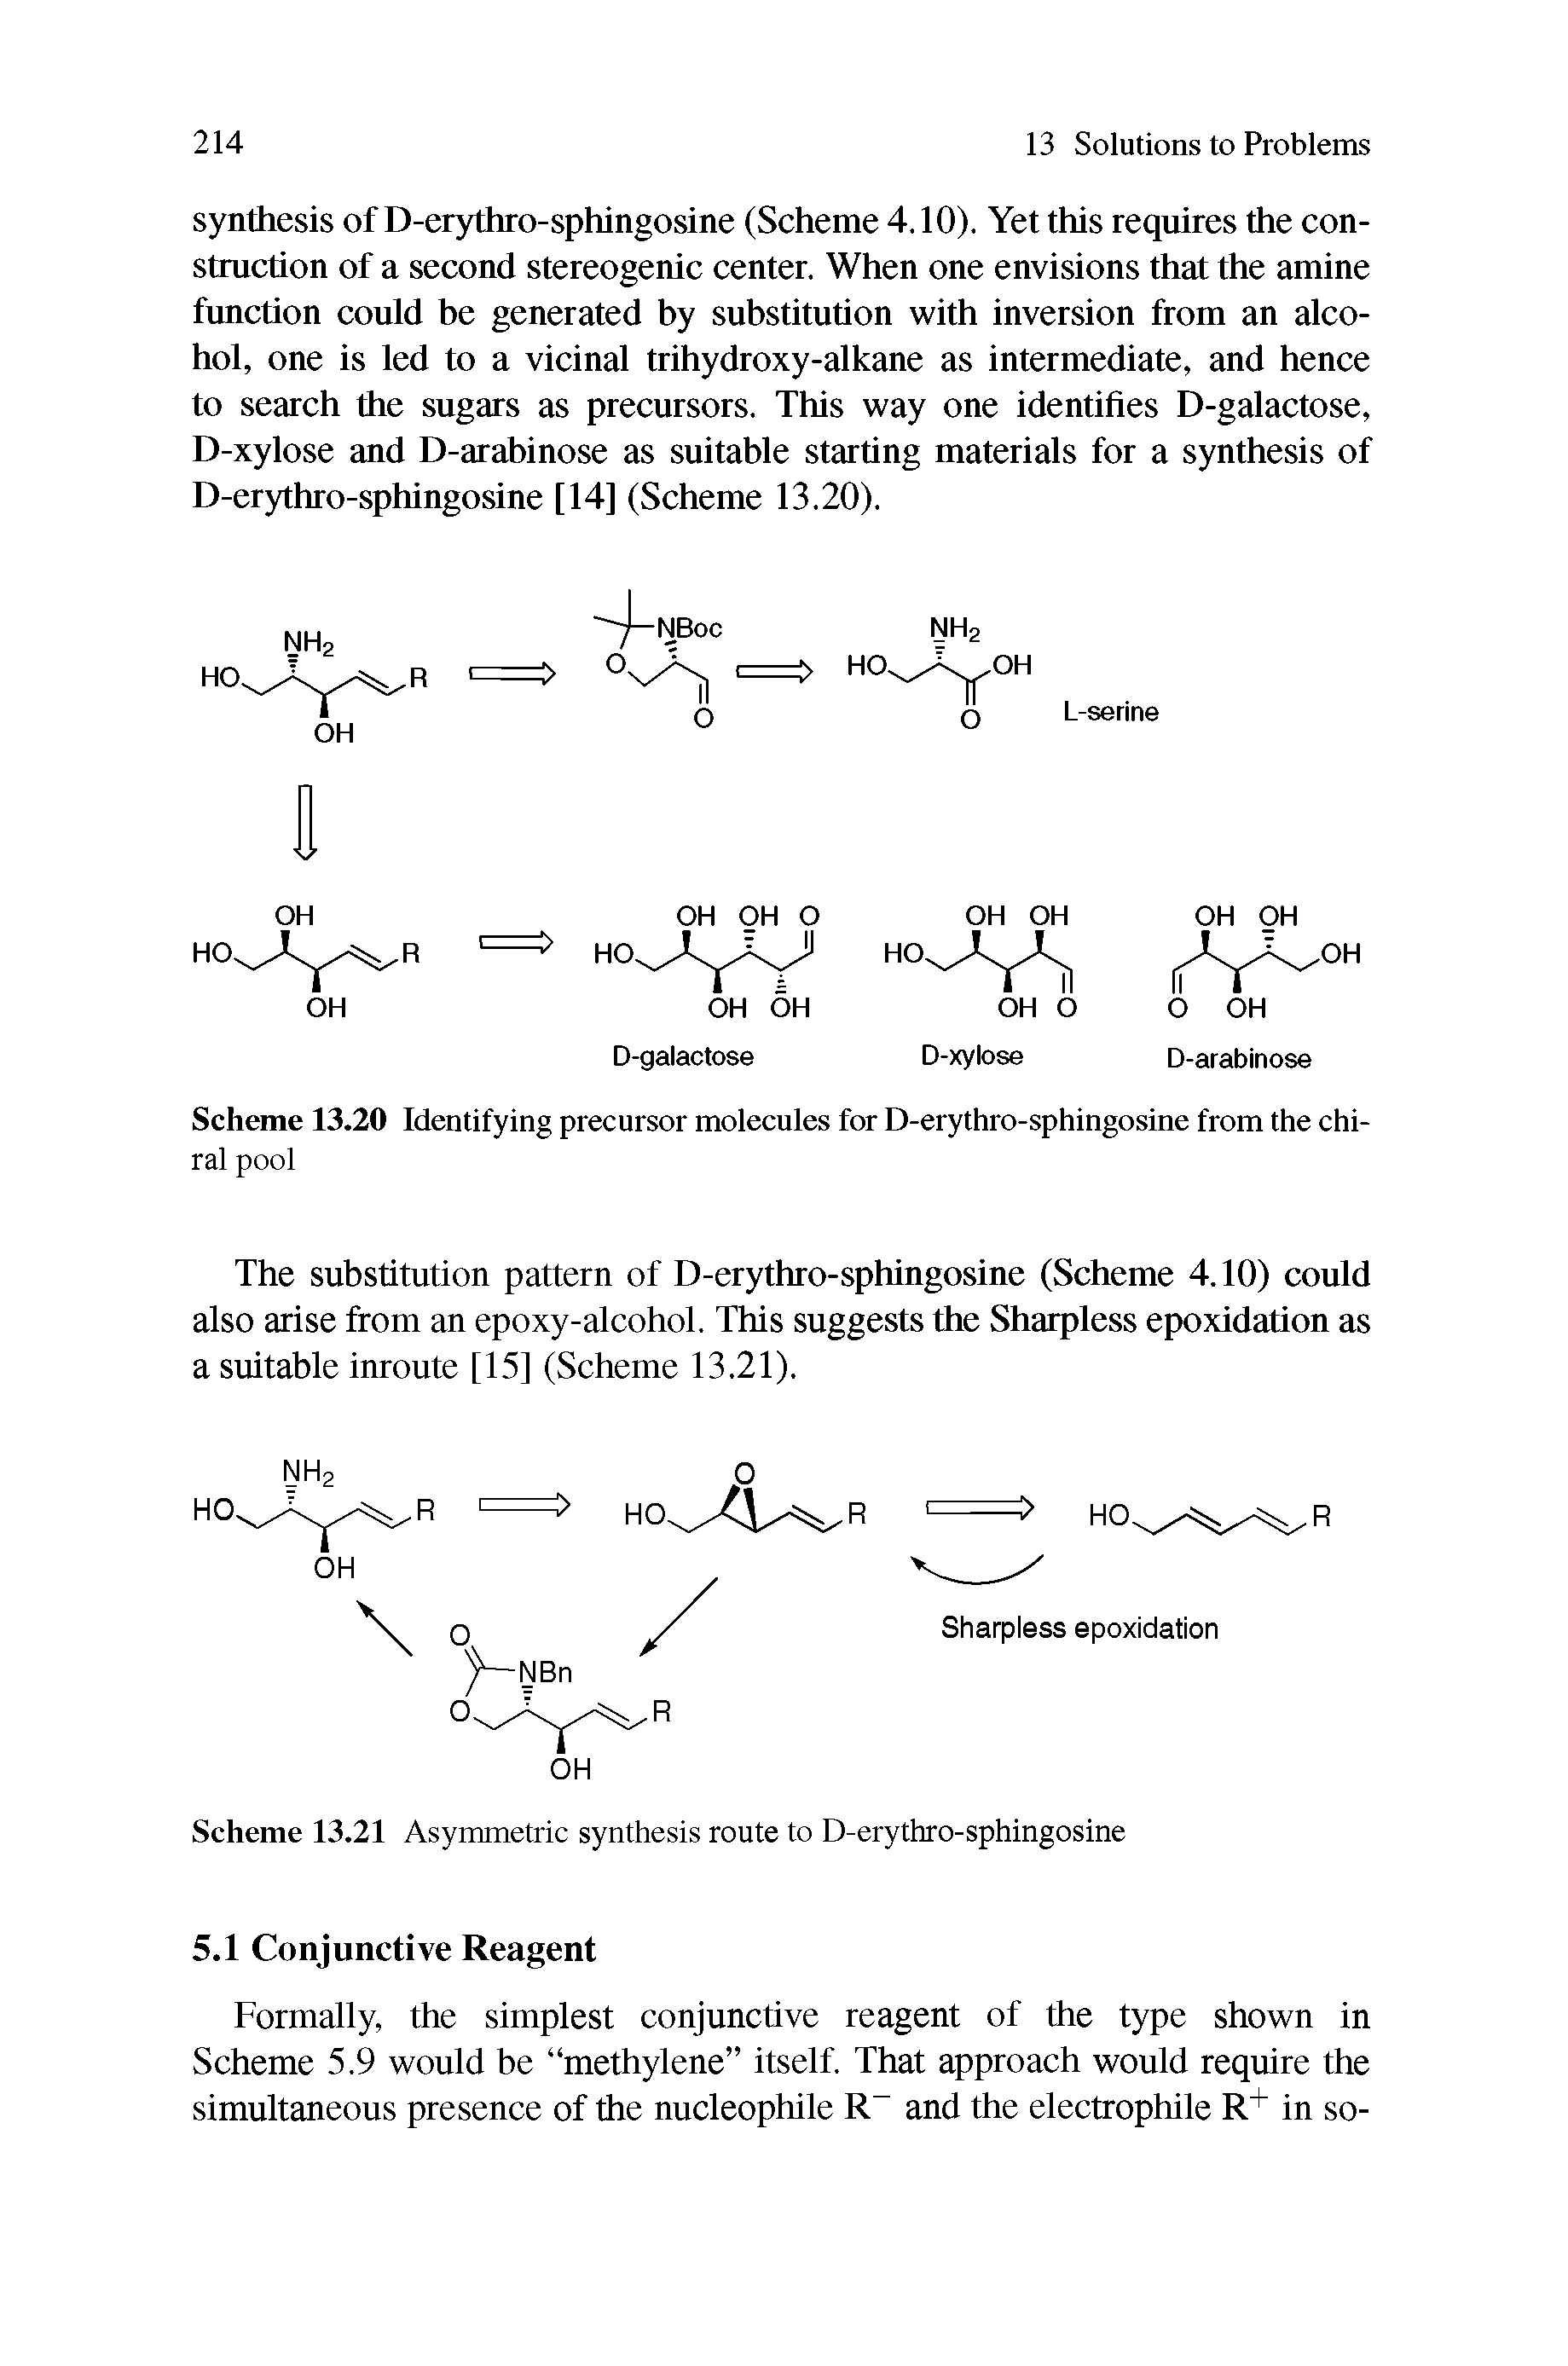 Scheme 13.21 Asymmetric synthesis route to D-erythro-sphingosine...